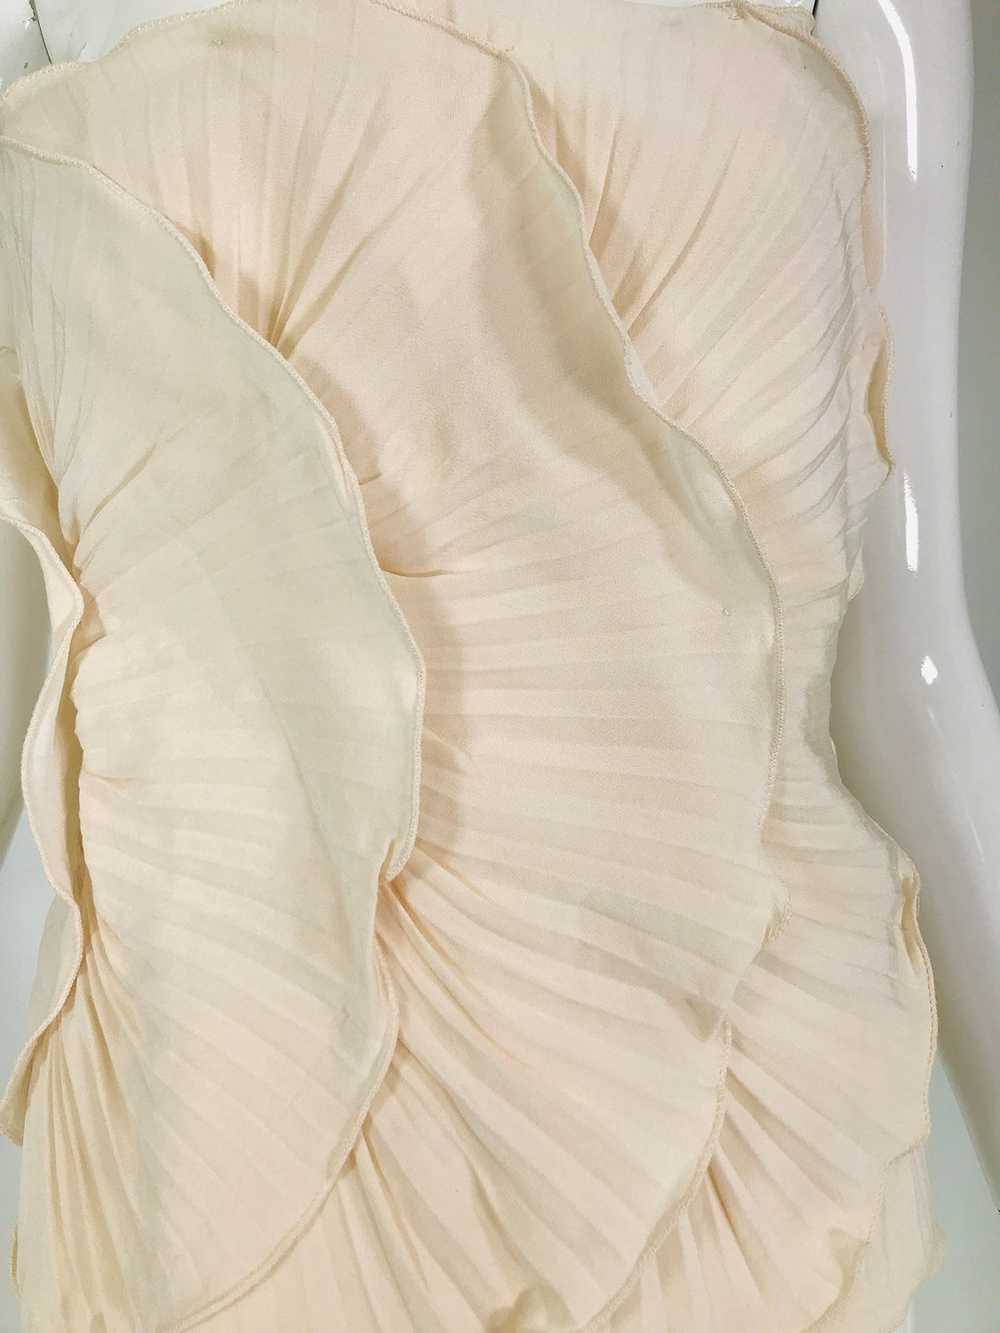 Mila Schon Ivory Bustier Plisse Silk 1980s unworn… - image 9